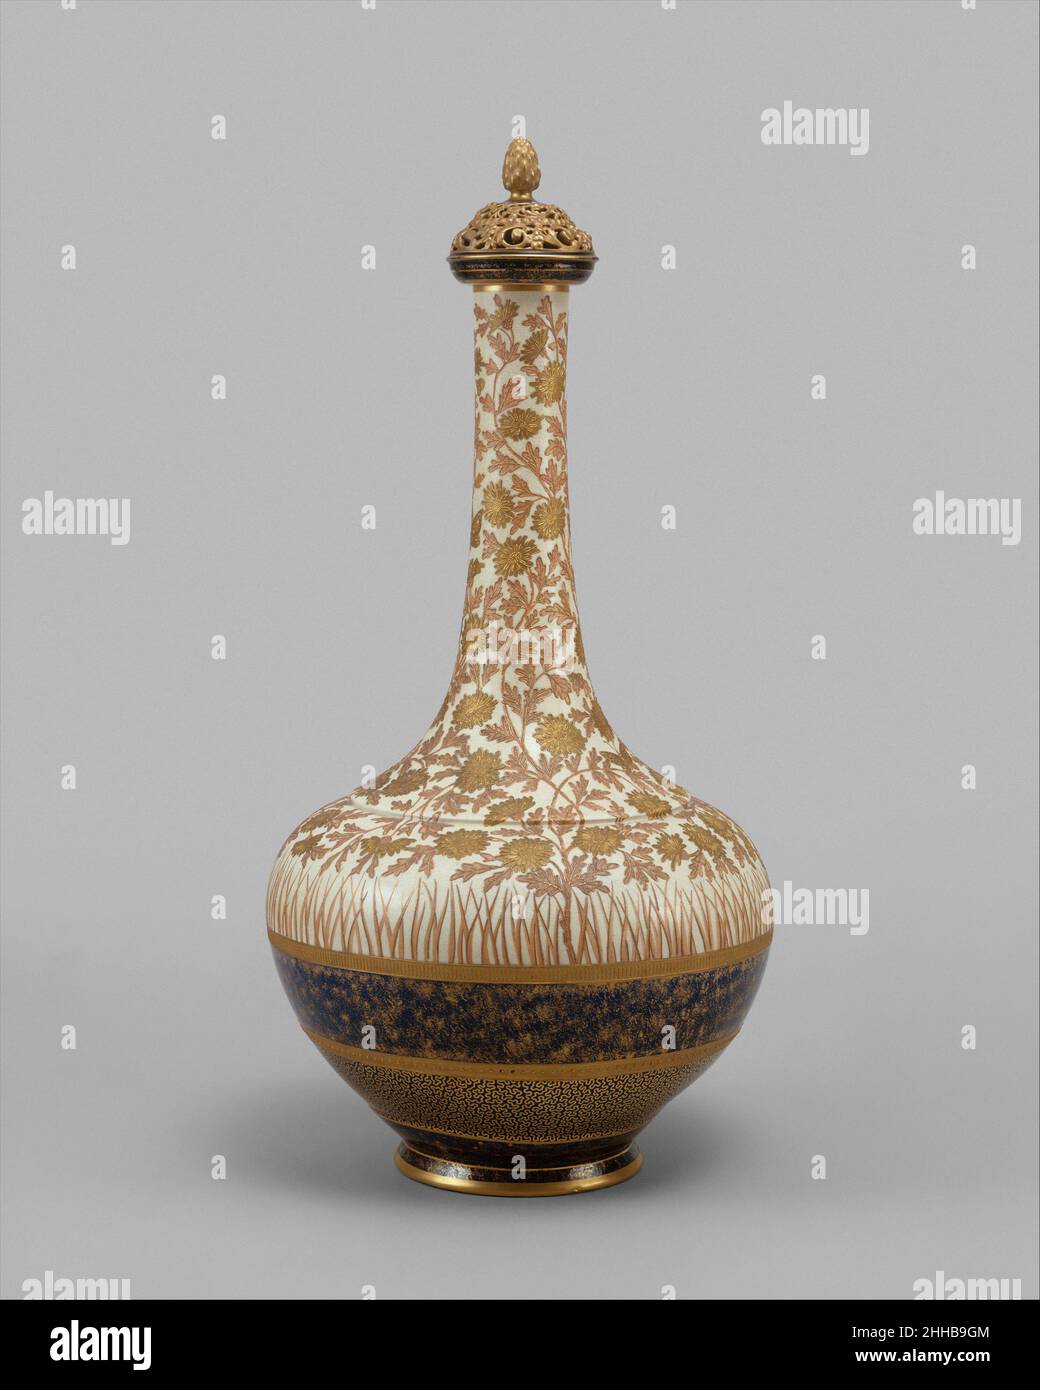 Jarrón Cubierto 1886–90 Probablemente diseñado por Lycett debido a su tamaño masivo, este jarrón en forma de botella inspirado en el Cercano Oriente es uno de más importantes del